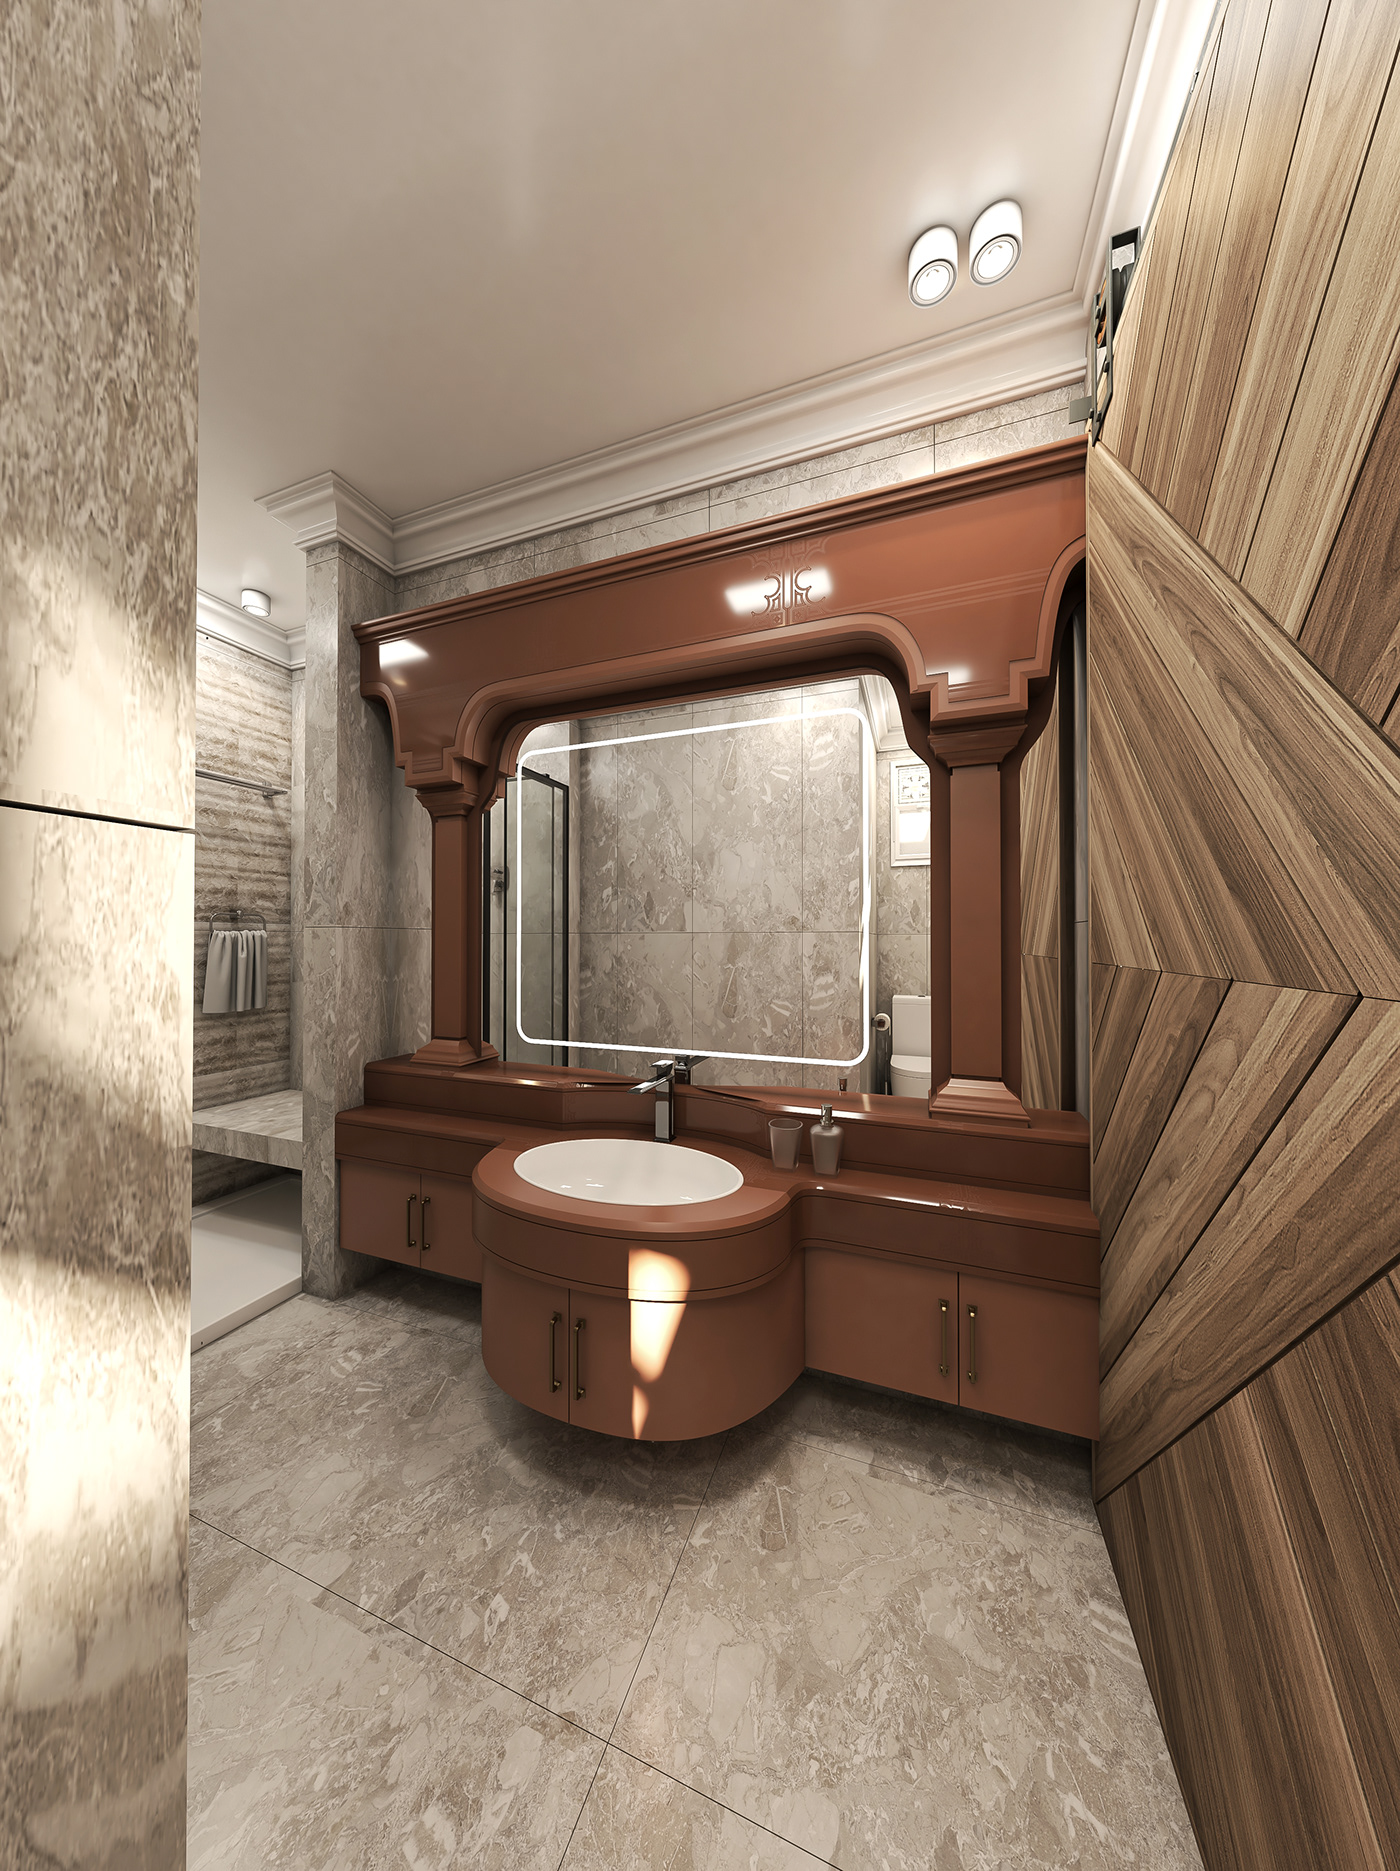 neoclassic interior design  Interior bathroom visualization bathroom design bathroomdesign interiordesign vray neoclassic interior